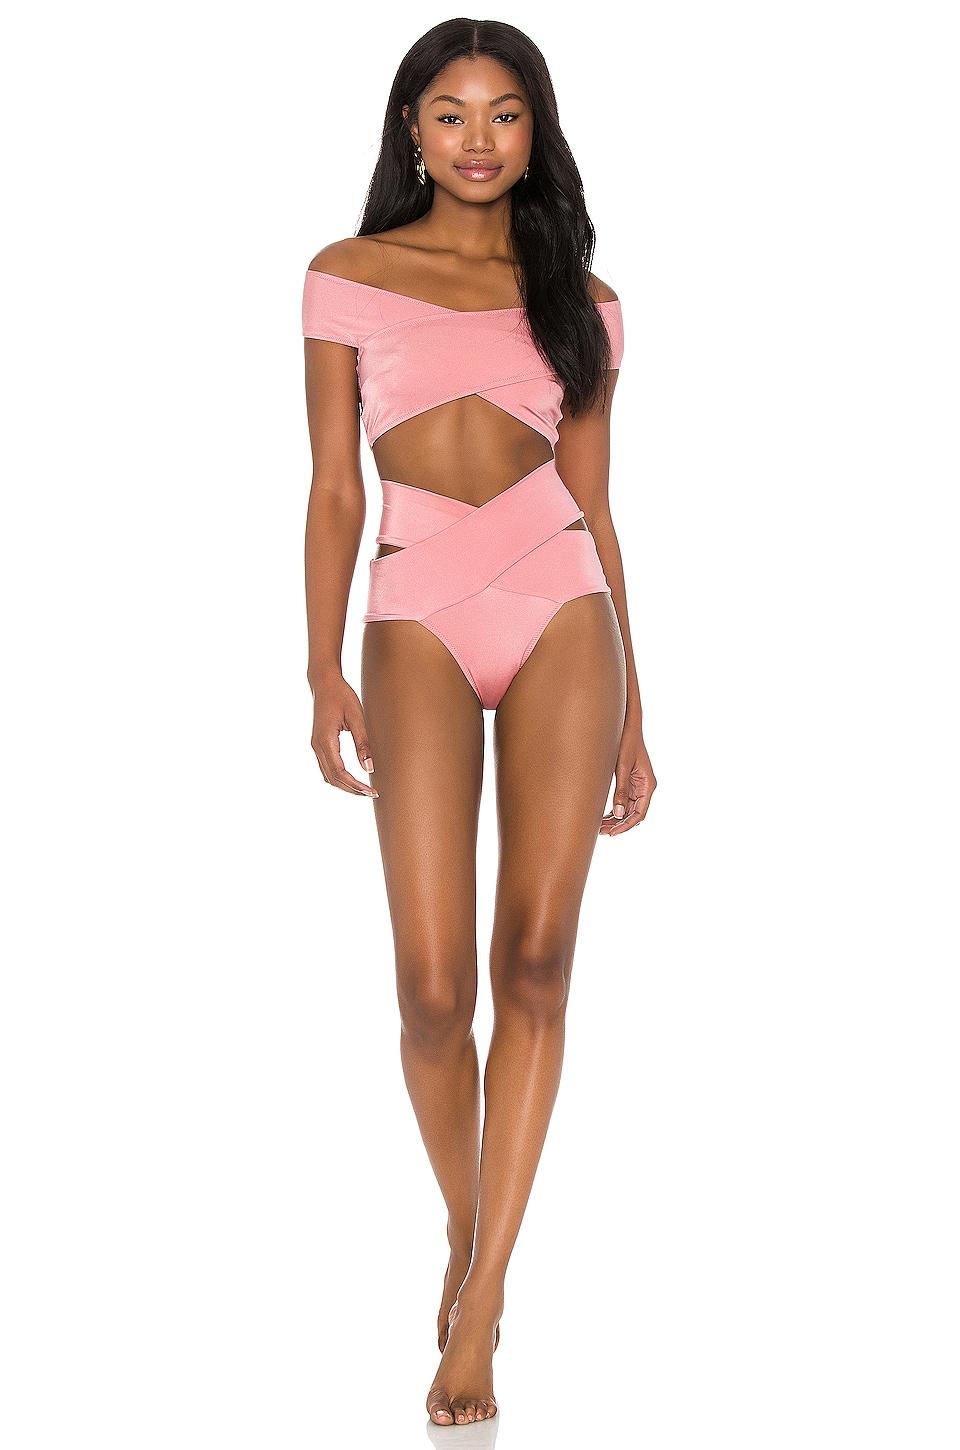 Lucette bikini set by Oye Swimwear